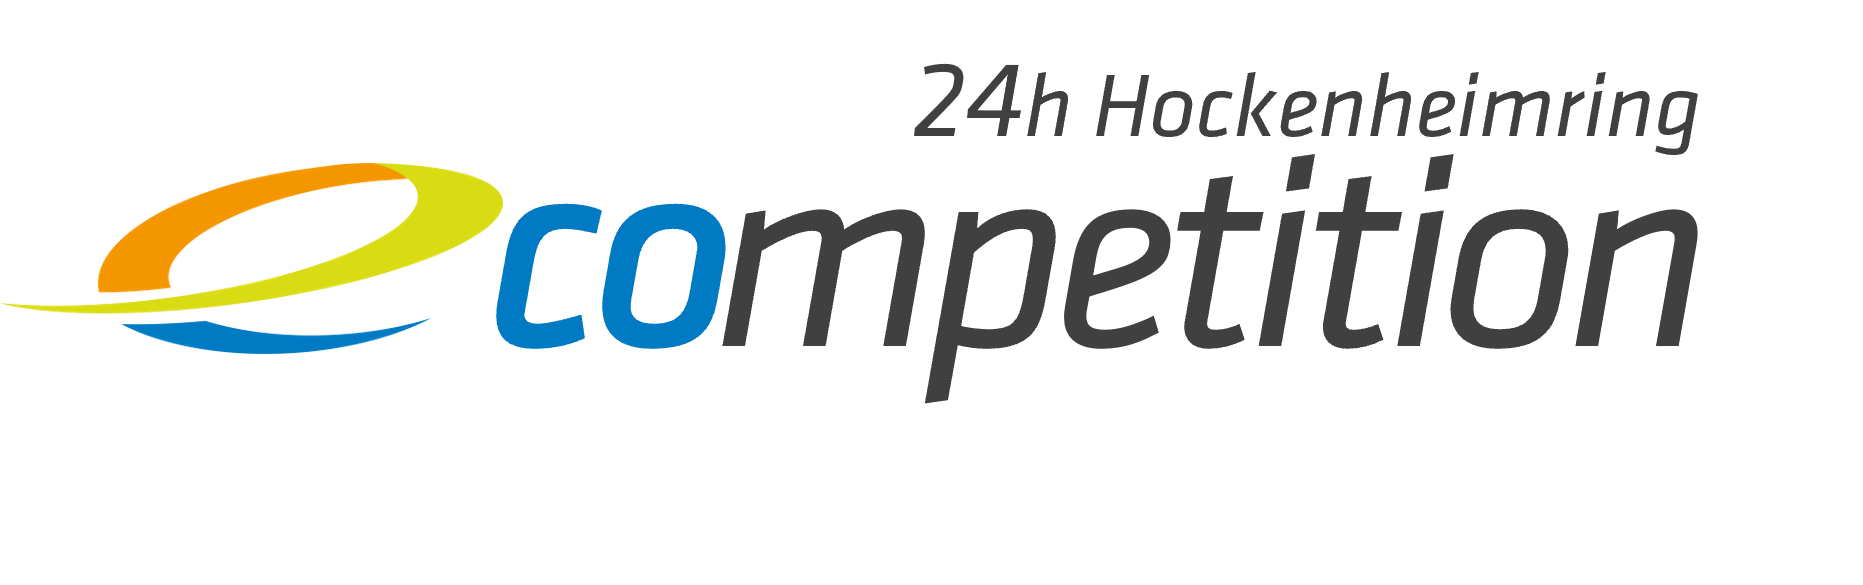 Logo der 24h e-competition & Partner der emodrom event + services